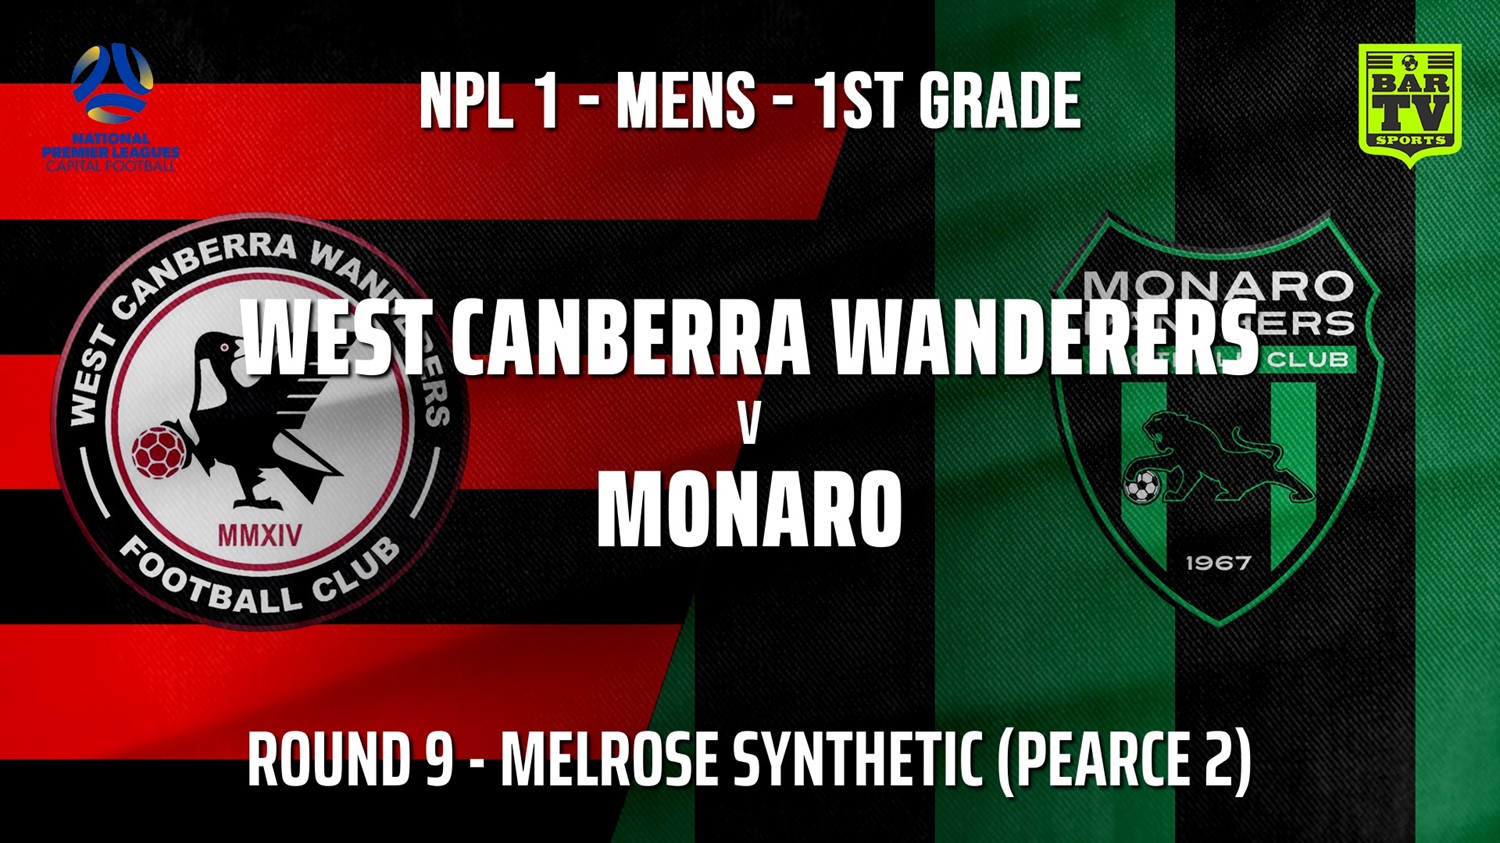 210612-Capital NPL Round 9 - West Canberra Wanderers v Monaro Panthers FC Minigame Slate Image